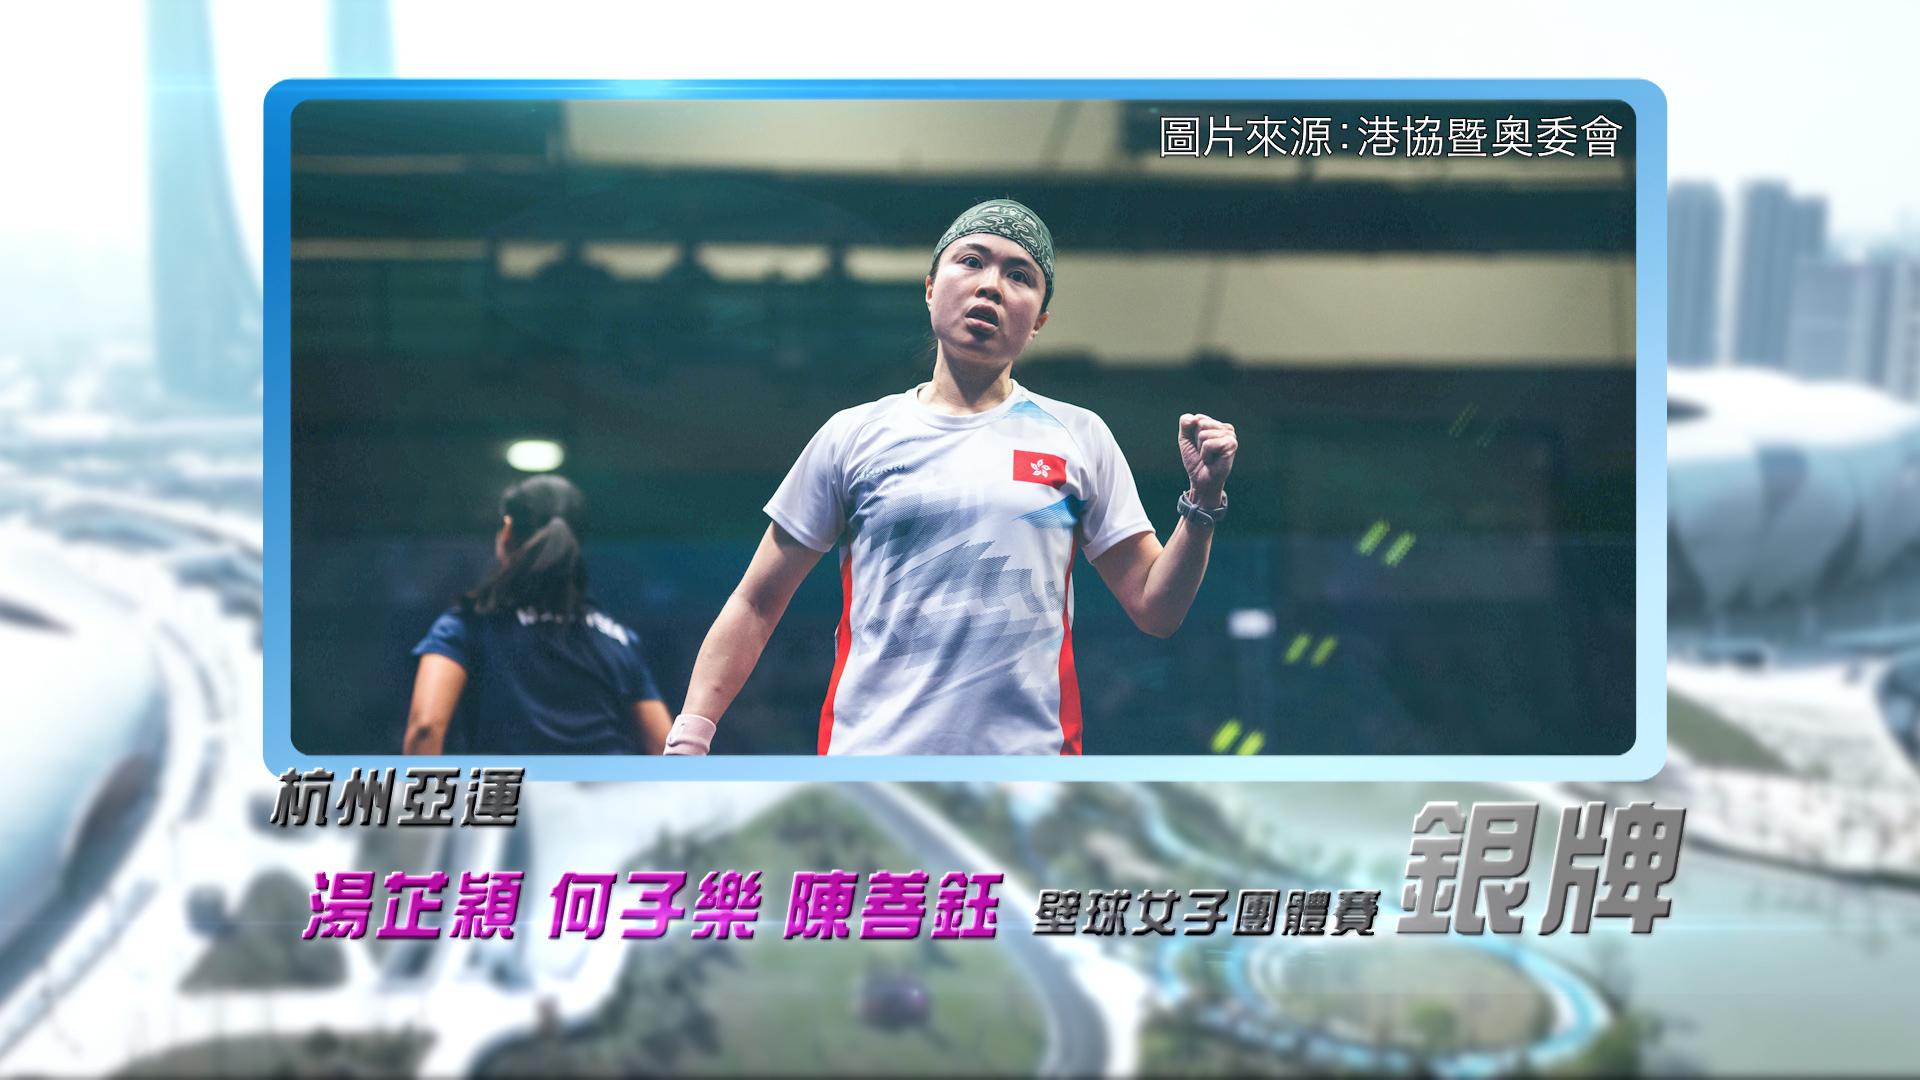 恭喜湯芷穎、何子樂、陳善鈺於杭州亞運壁球女子團體賽獲得銀牌！